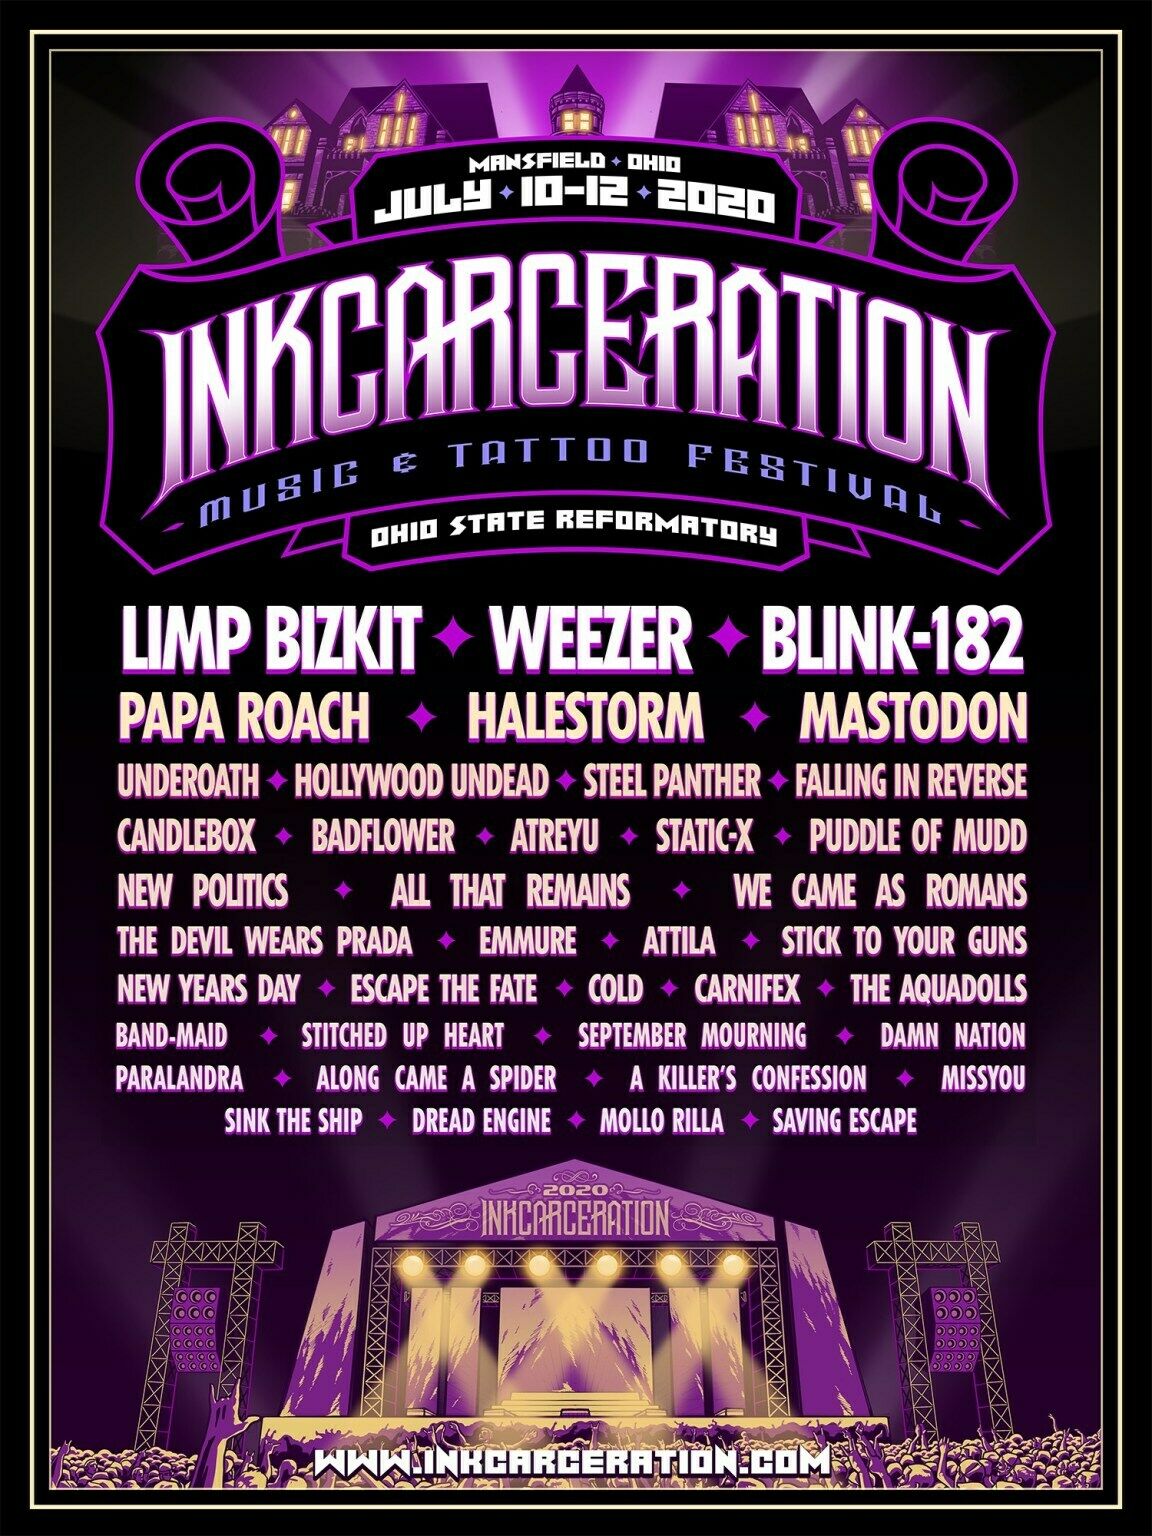 INKCARCERATION 2020 CONCERT TOUR POSTER: Limp Bizkit,Weezer,Blink-182,Papa Roach